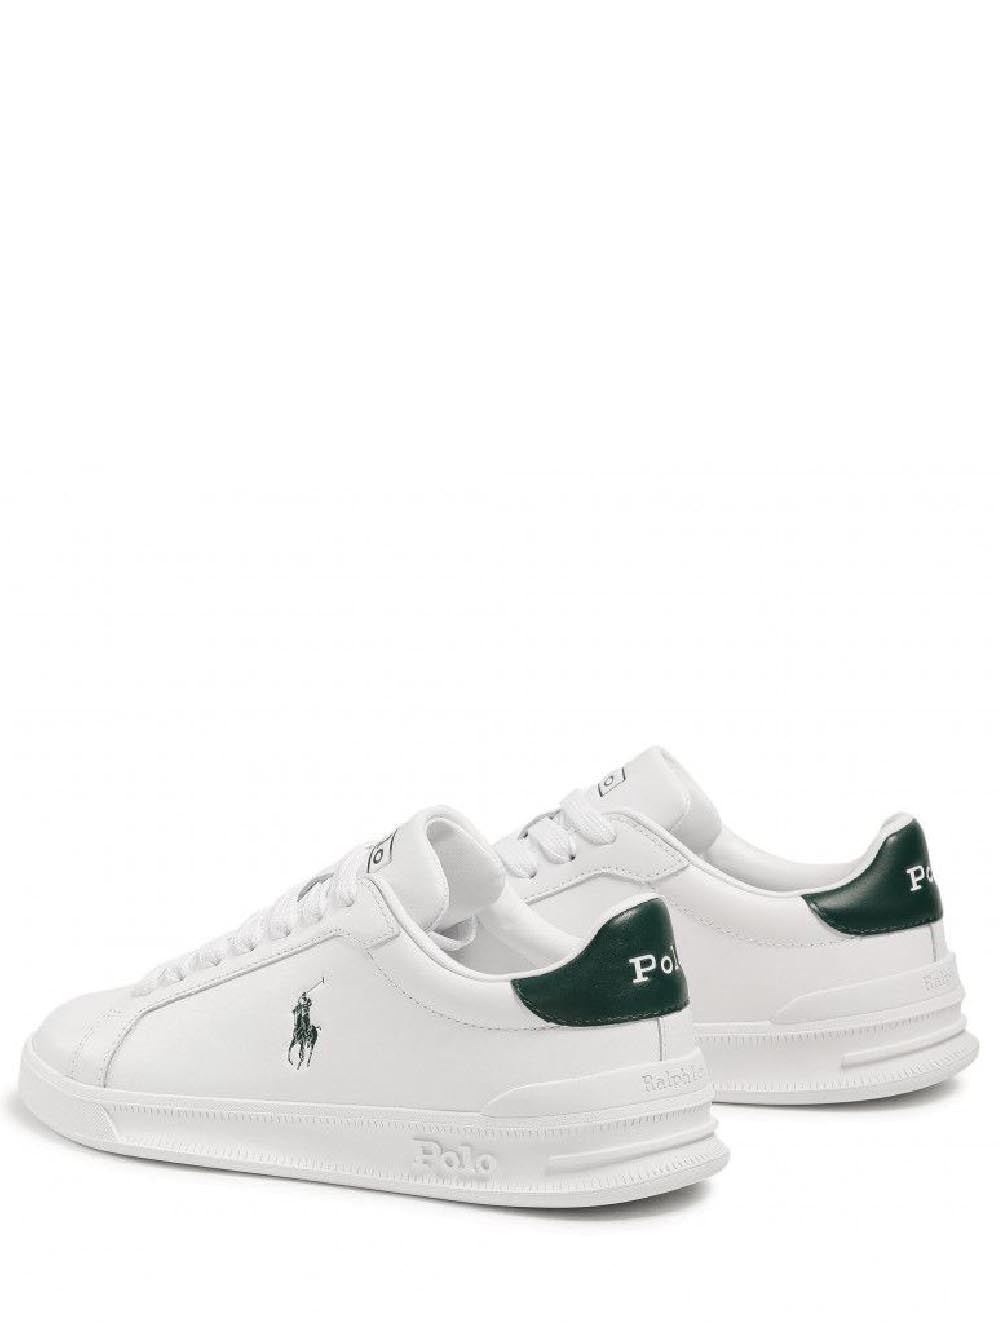 POLO RALPH LAUREN Sneakers Uomo Bianco verde